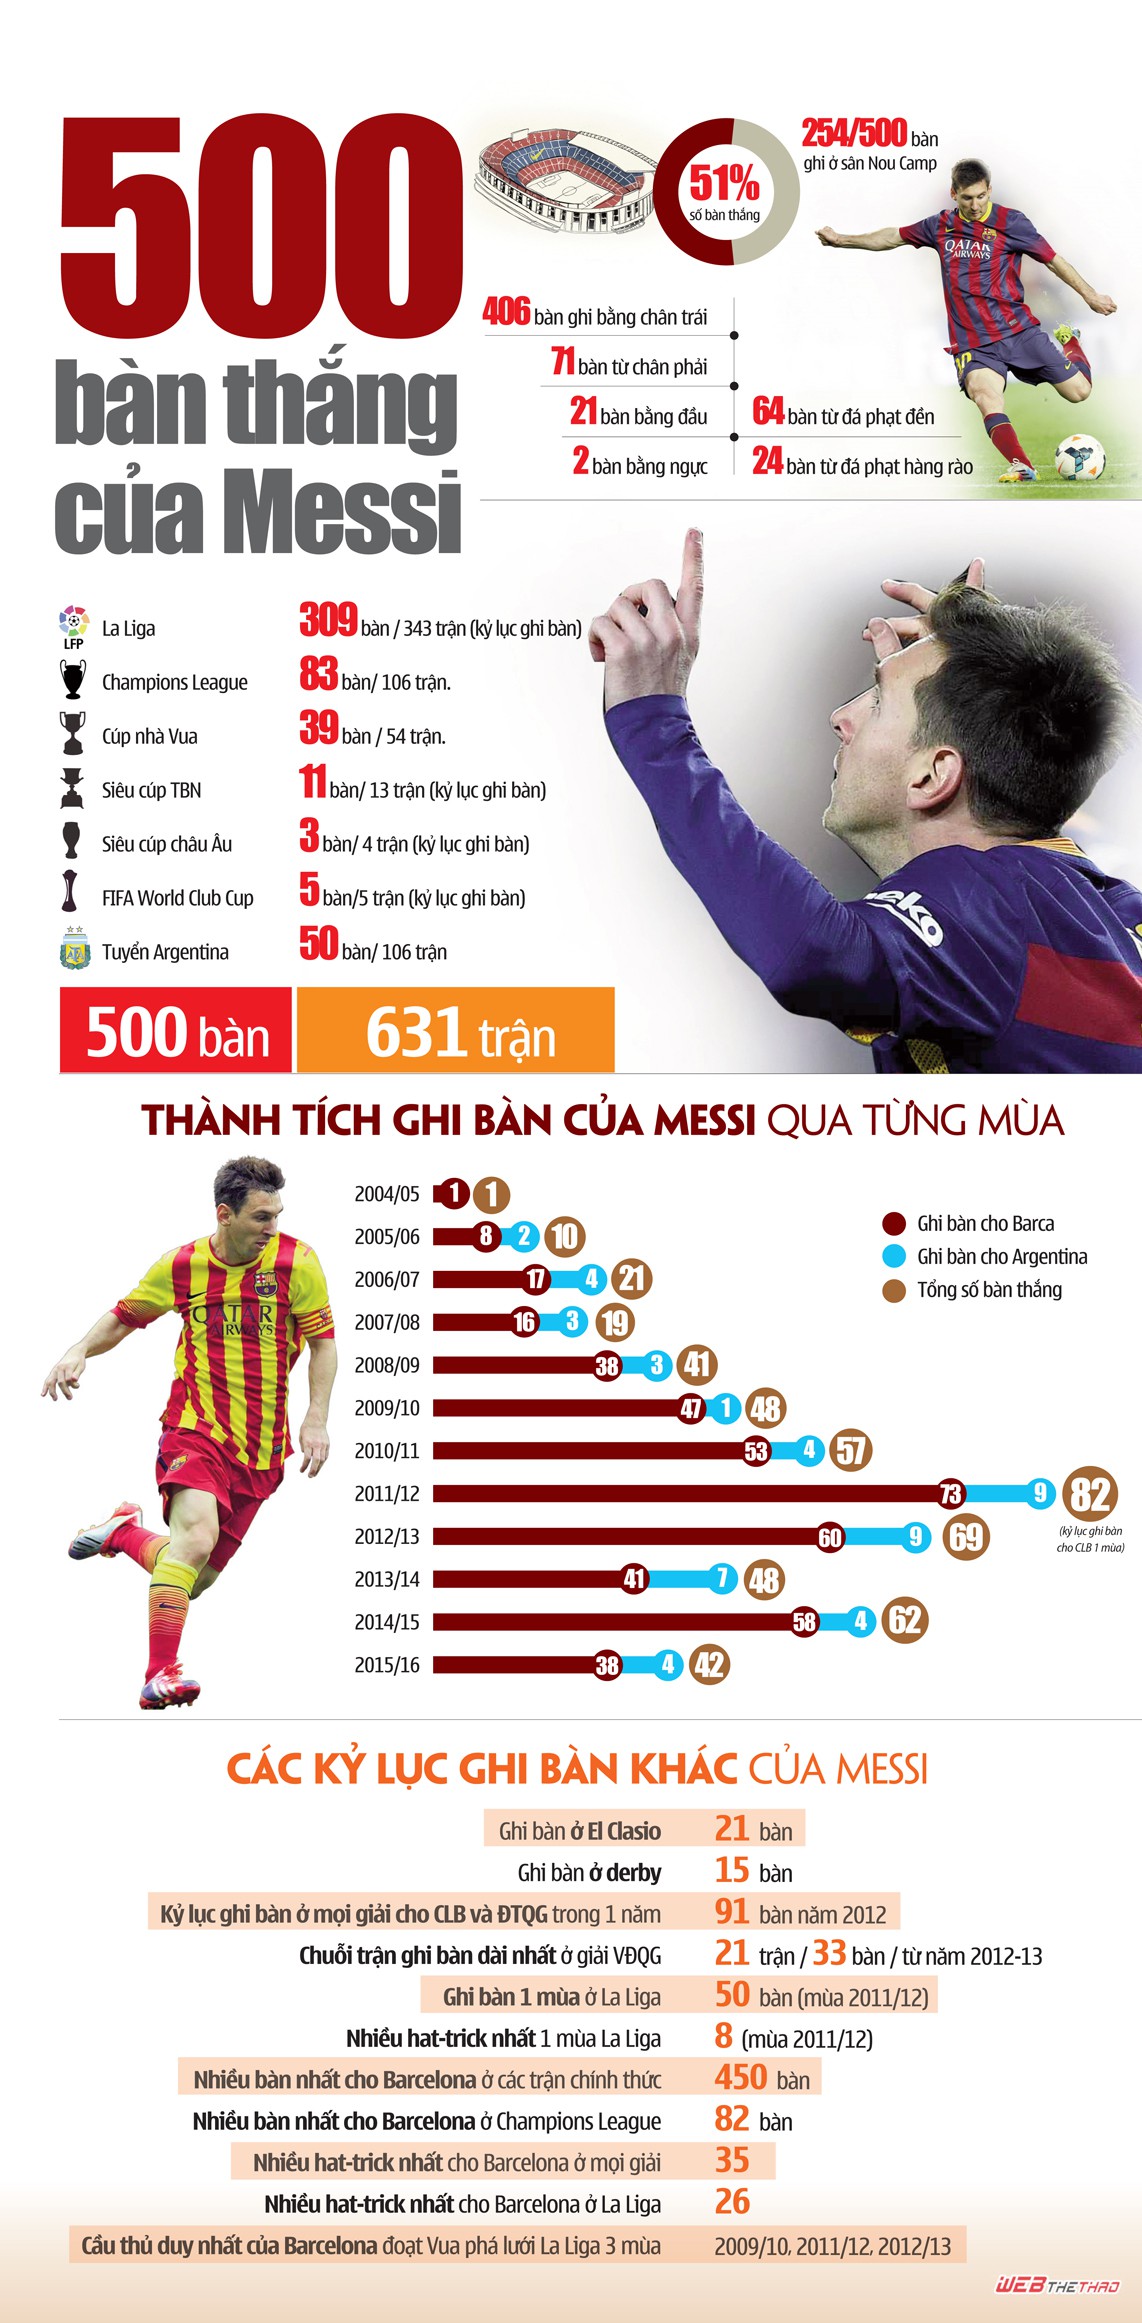 Chi tiết về 500 bàn của Messi